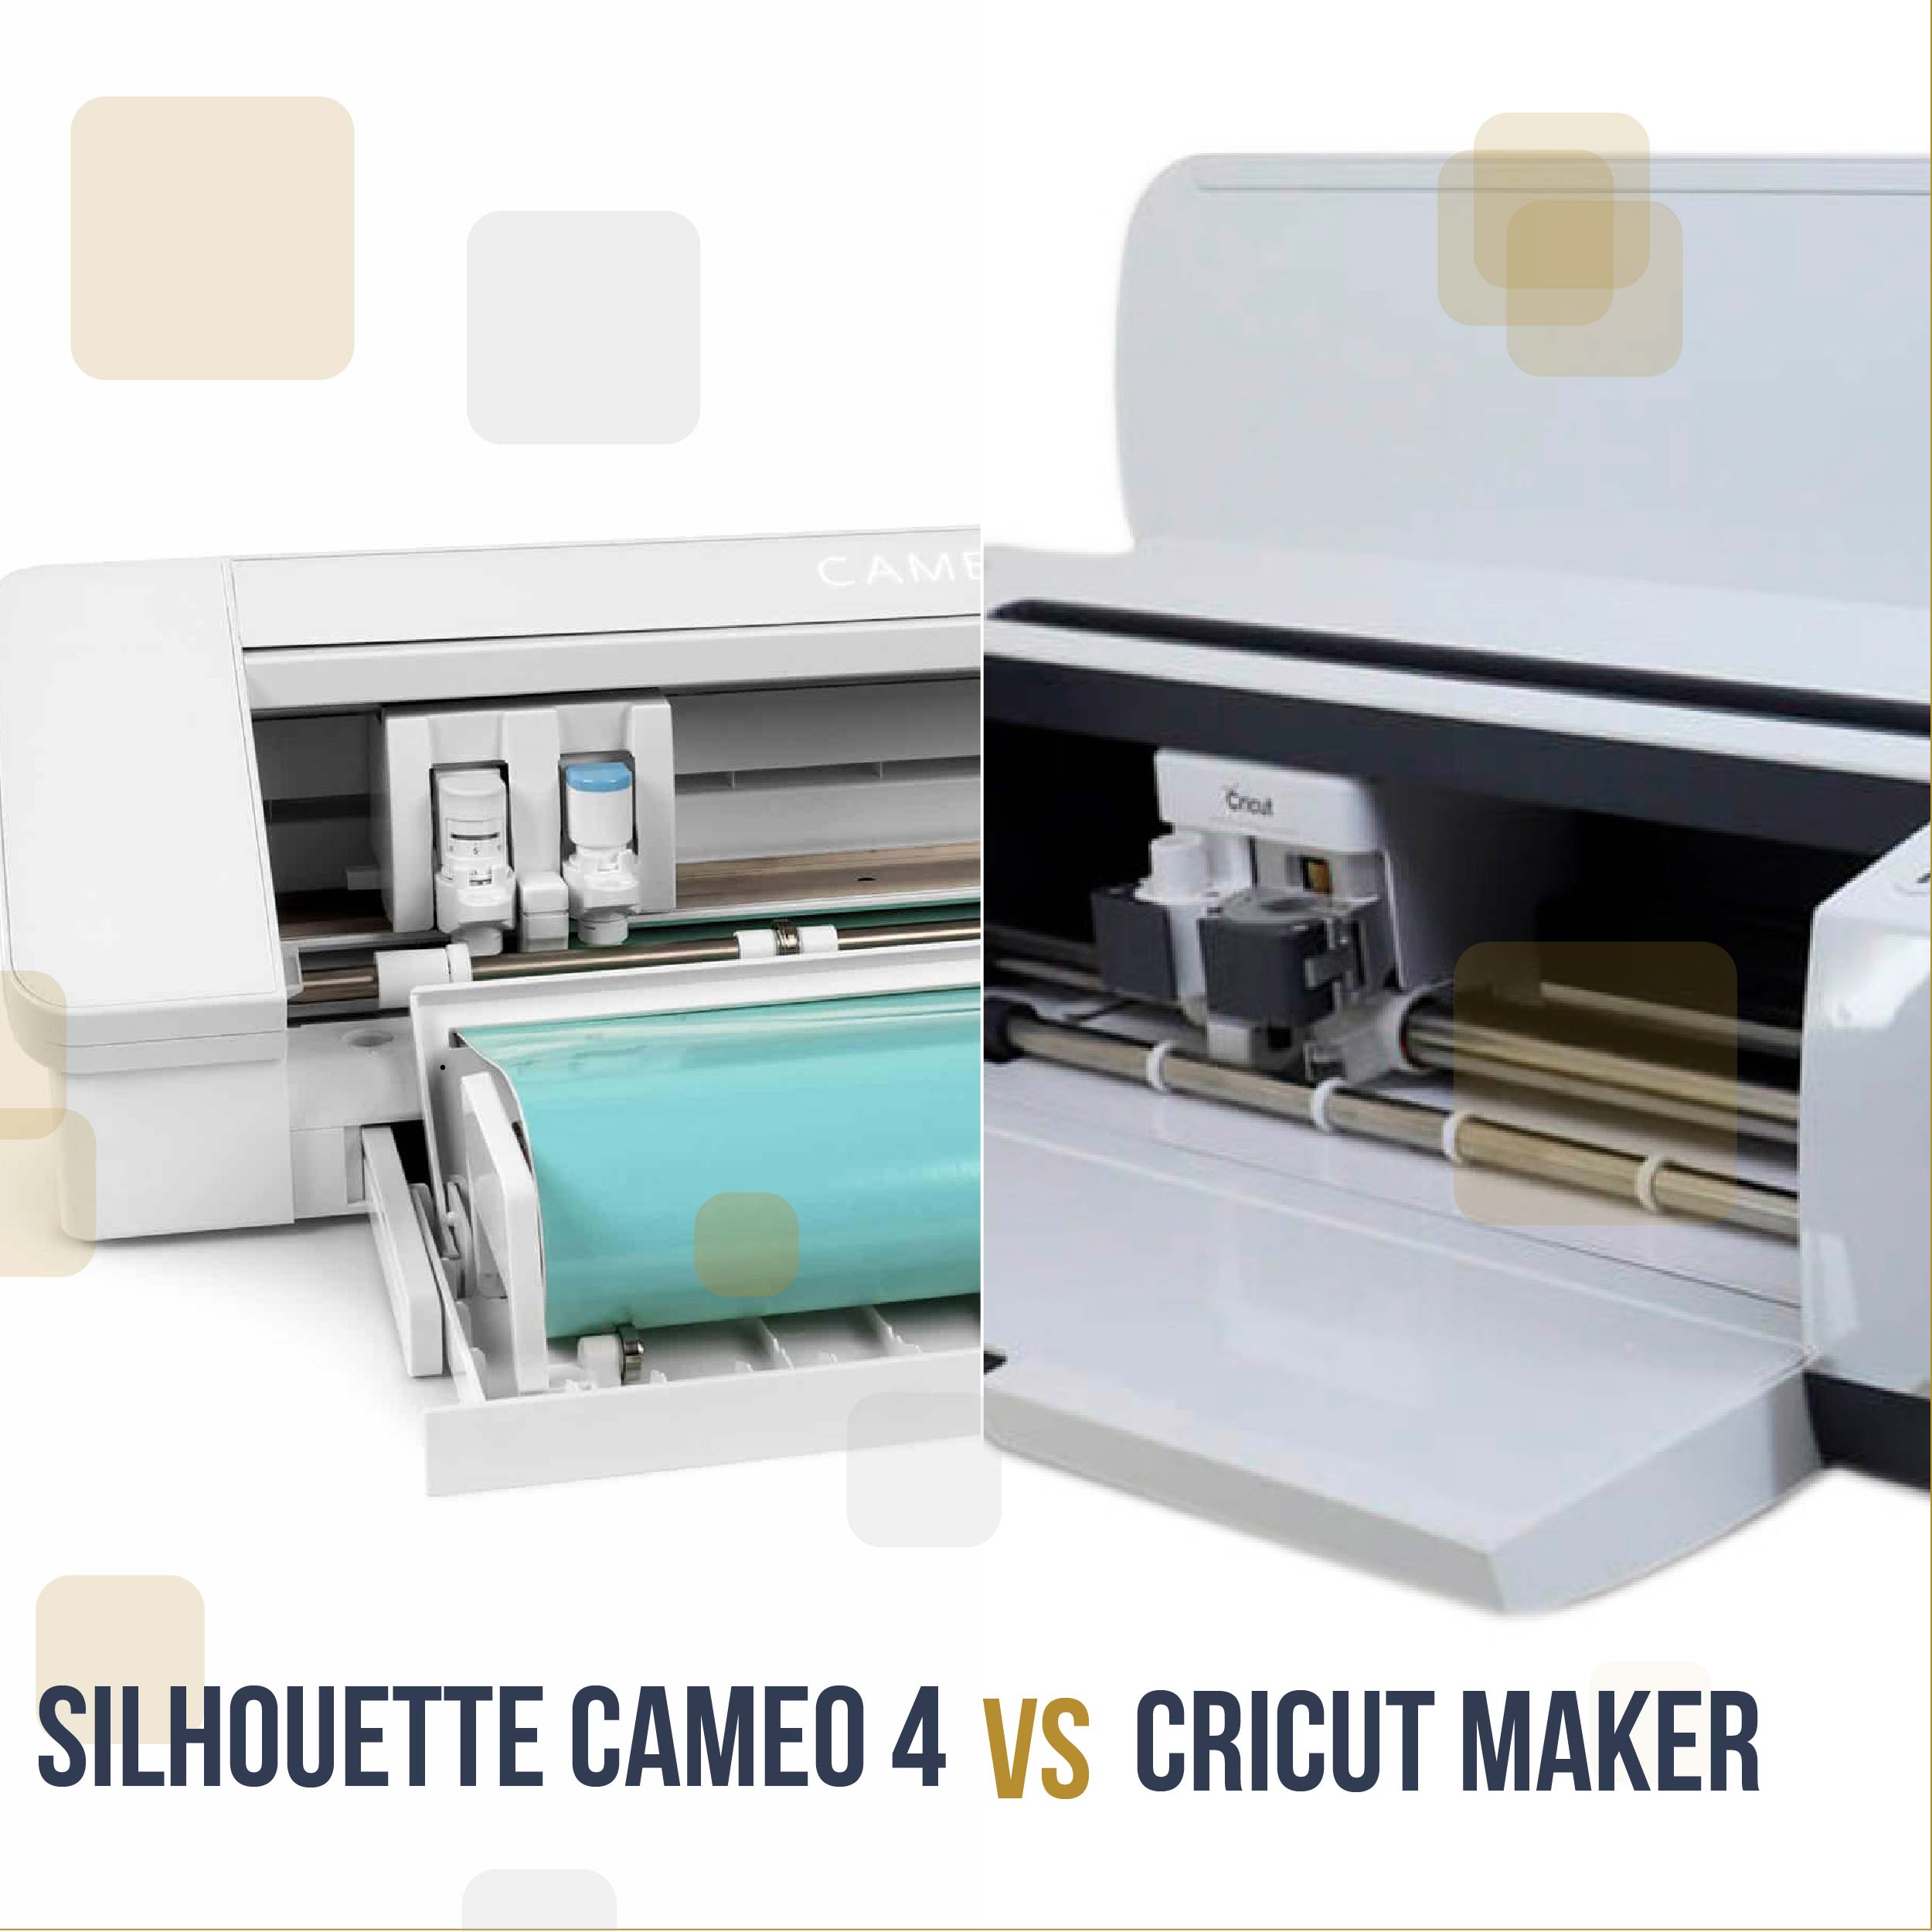 Cricut Maker vs Silhouette Cameo 4